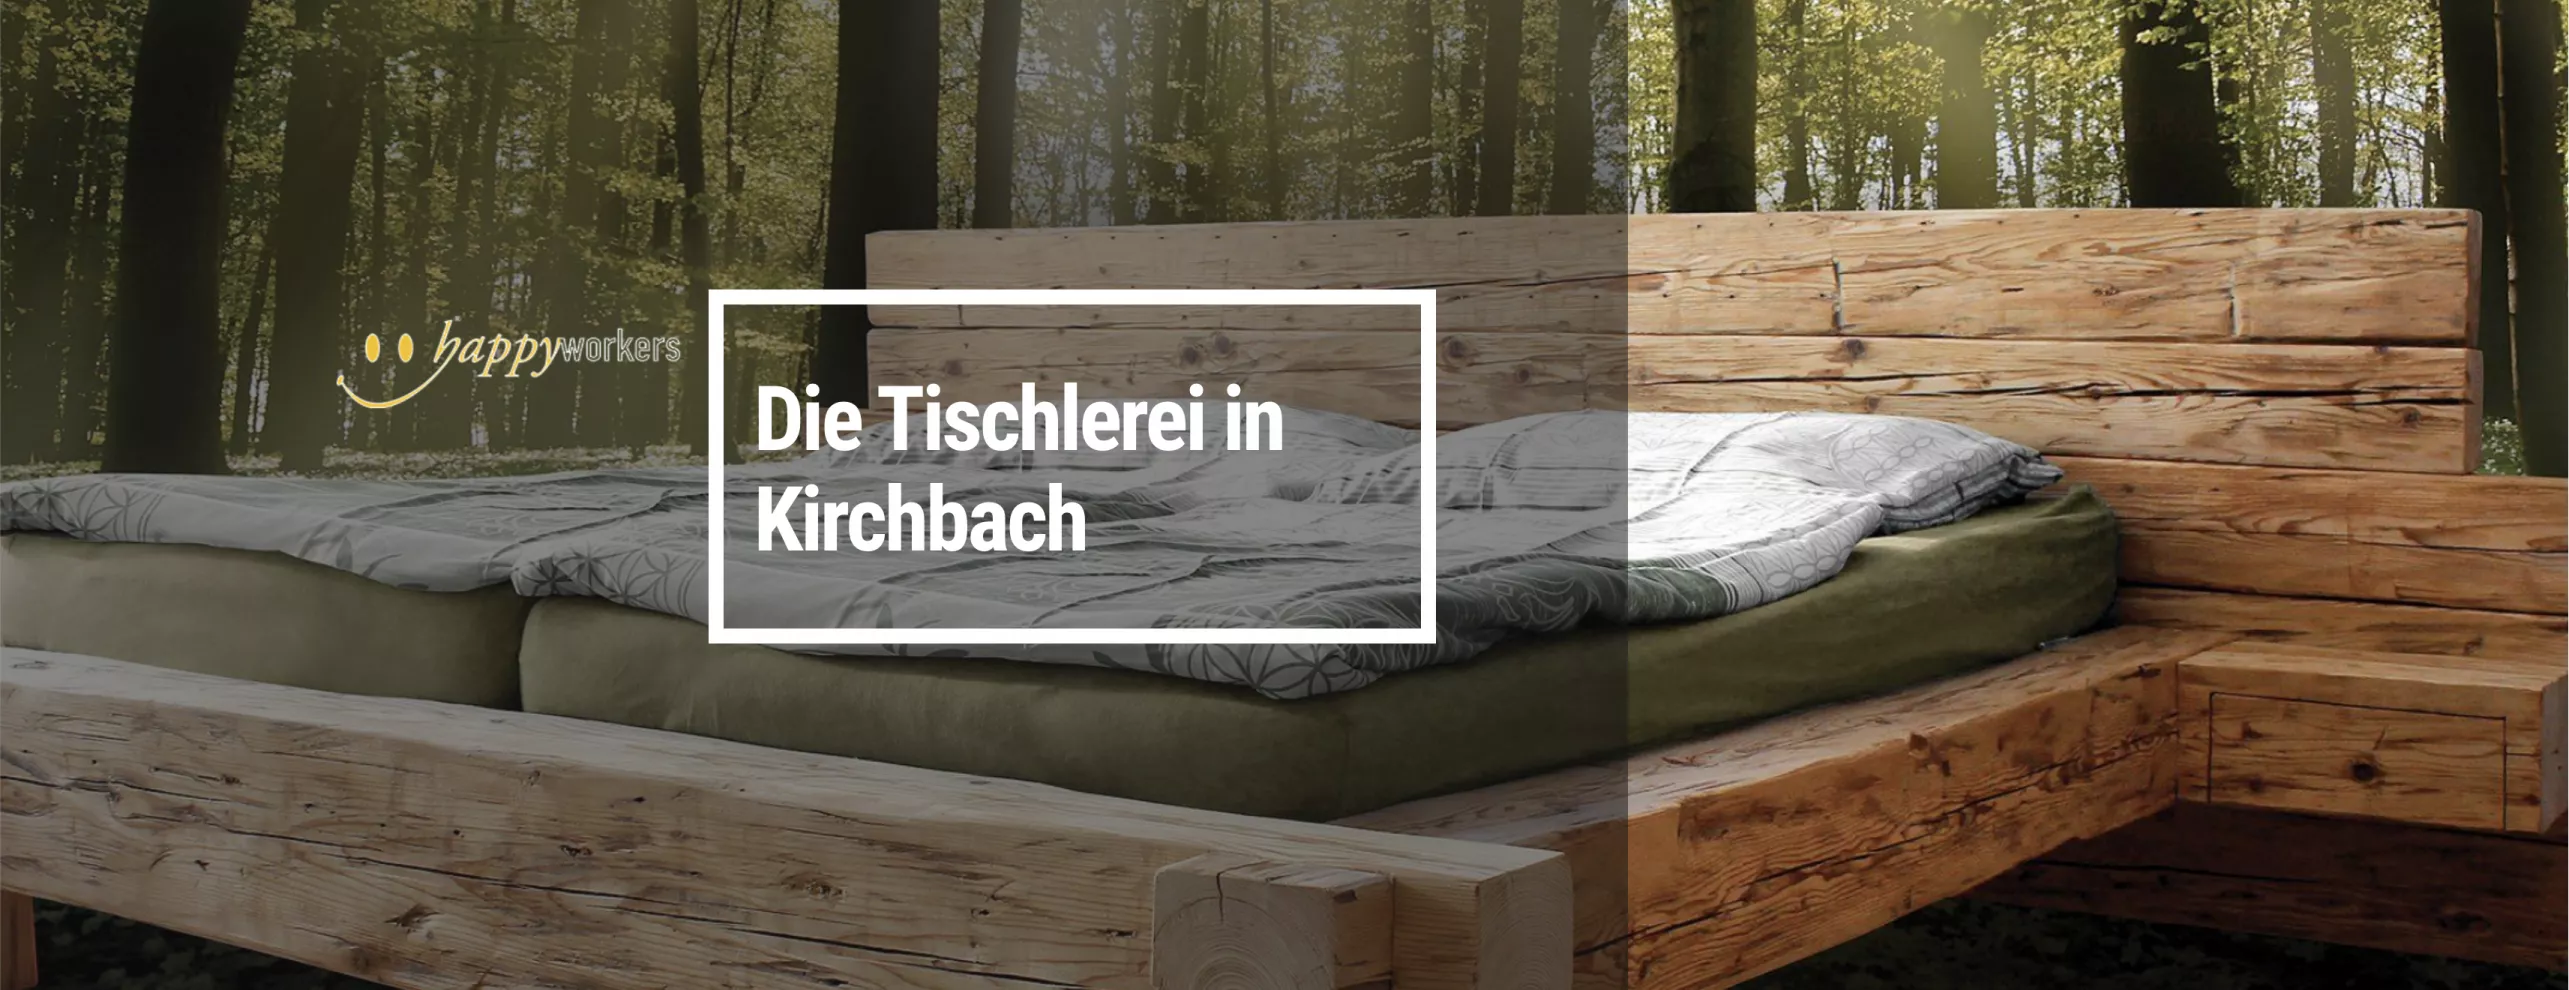 Happyworkers - Tischlerei in Kirchbach